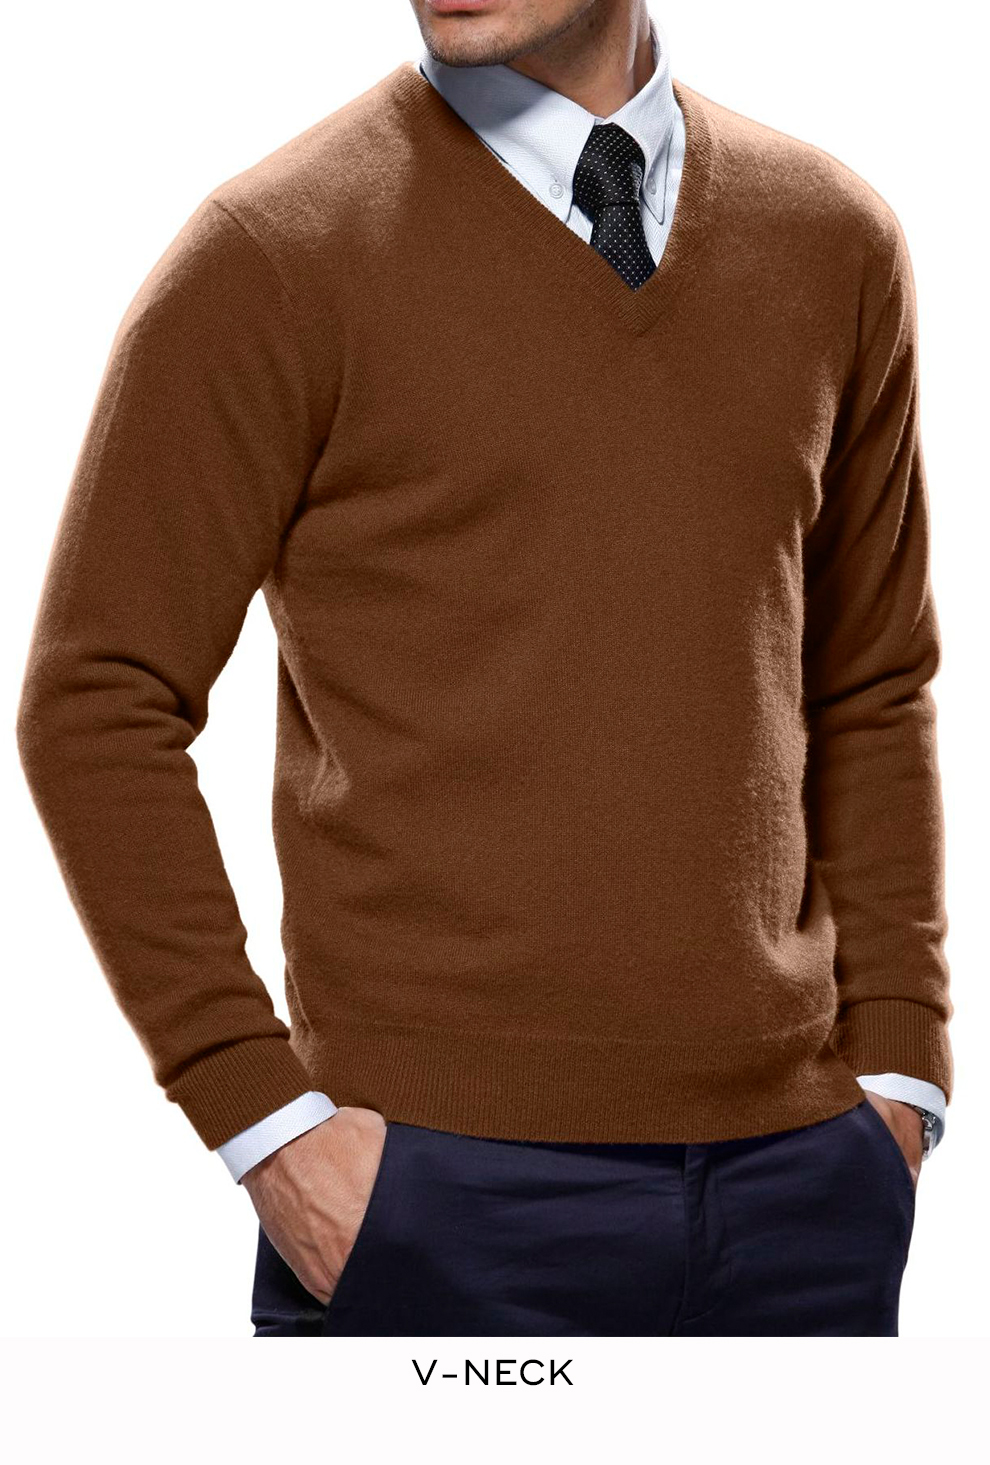 Wool Overs Mens 100% Merino Half Zip Neck Sweater Merlot S 